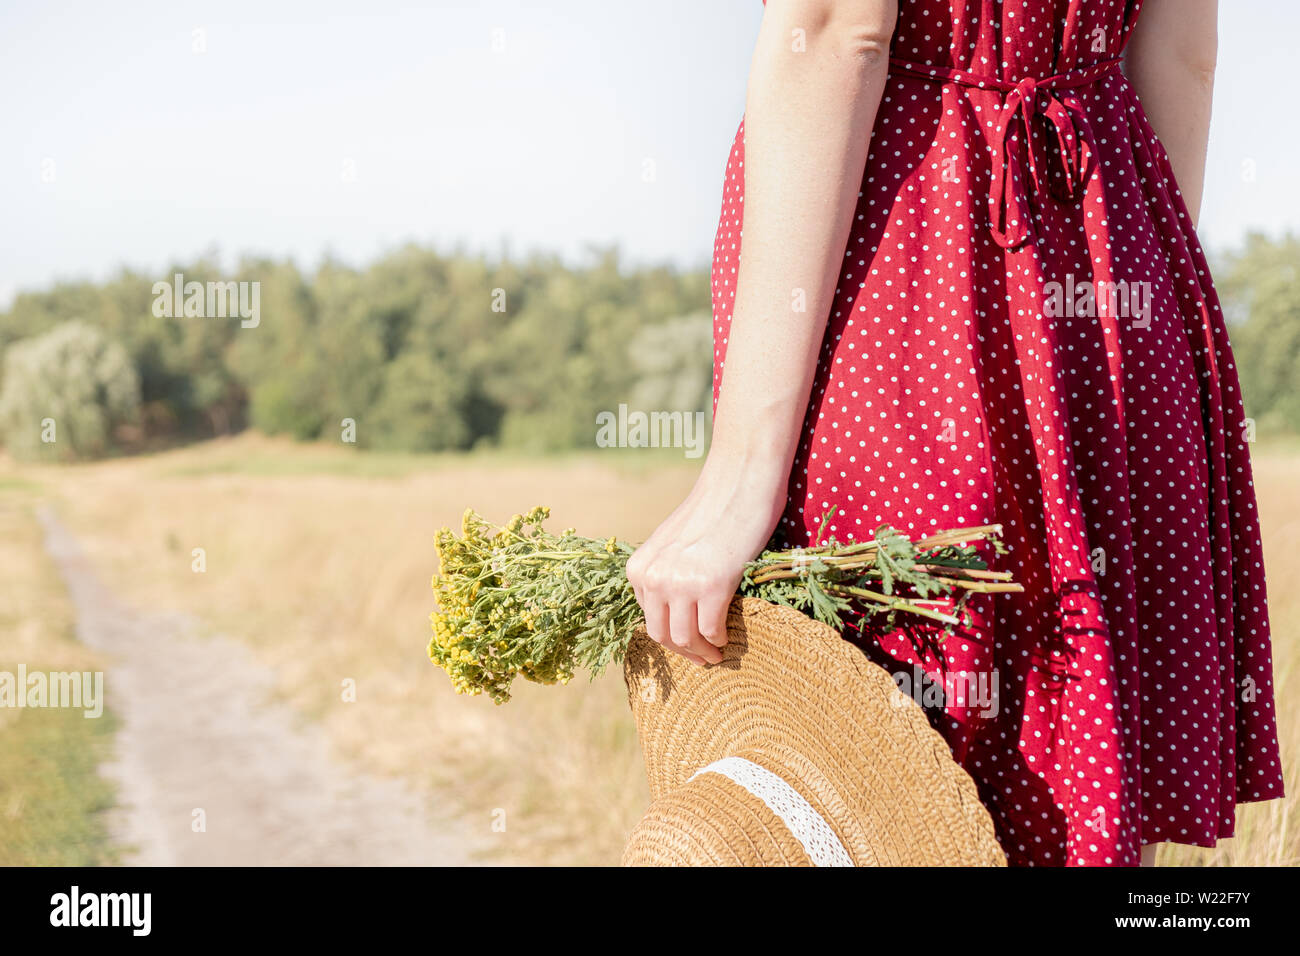 Frau hält Bündel Feld Blumen und einen Hut im Hintergrund. Ländliche Szene: Weibliche in Polka-dot-Kleid mit Landwirt hat und Blumenstrauß in der Hand, Clo Stockfoto